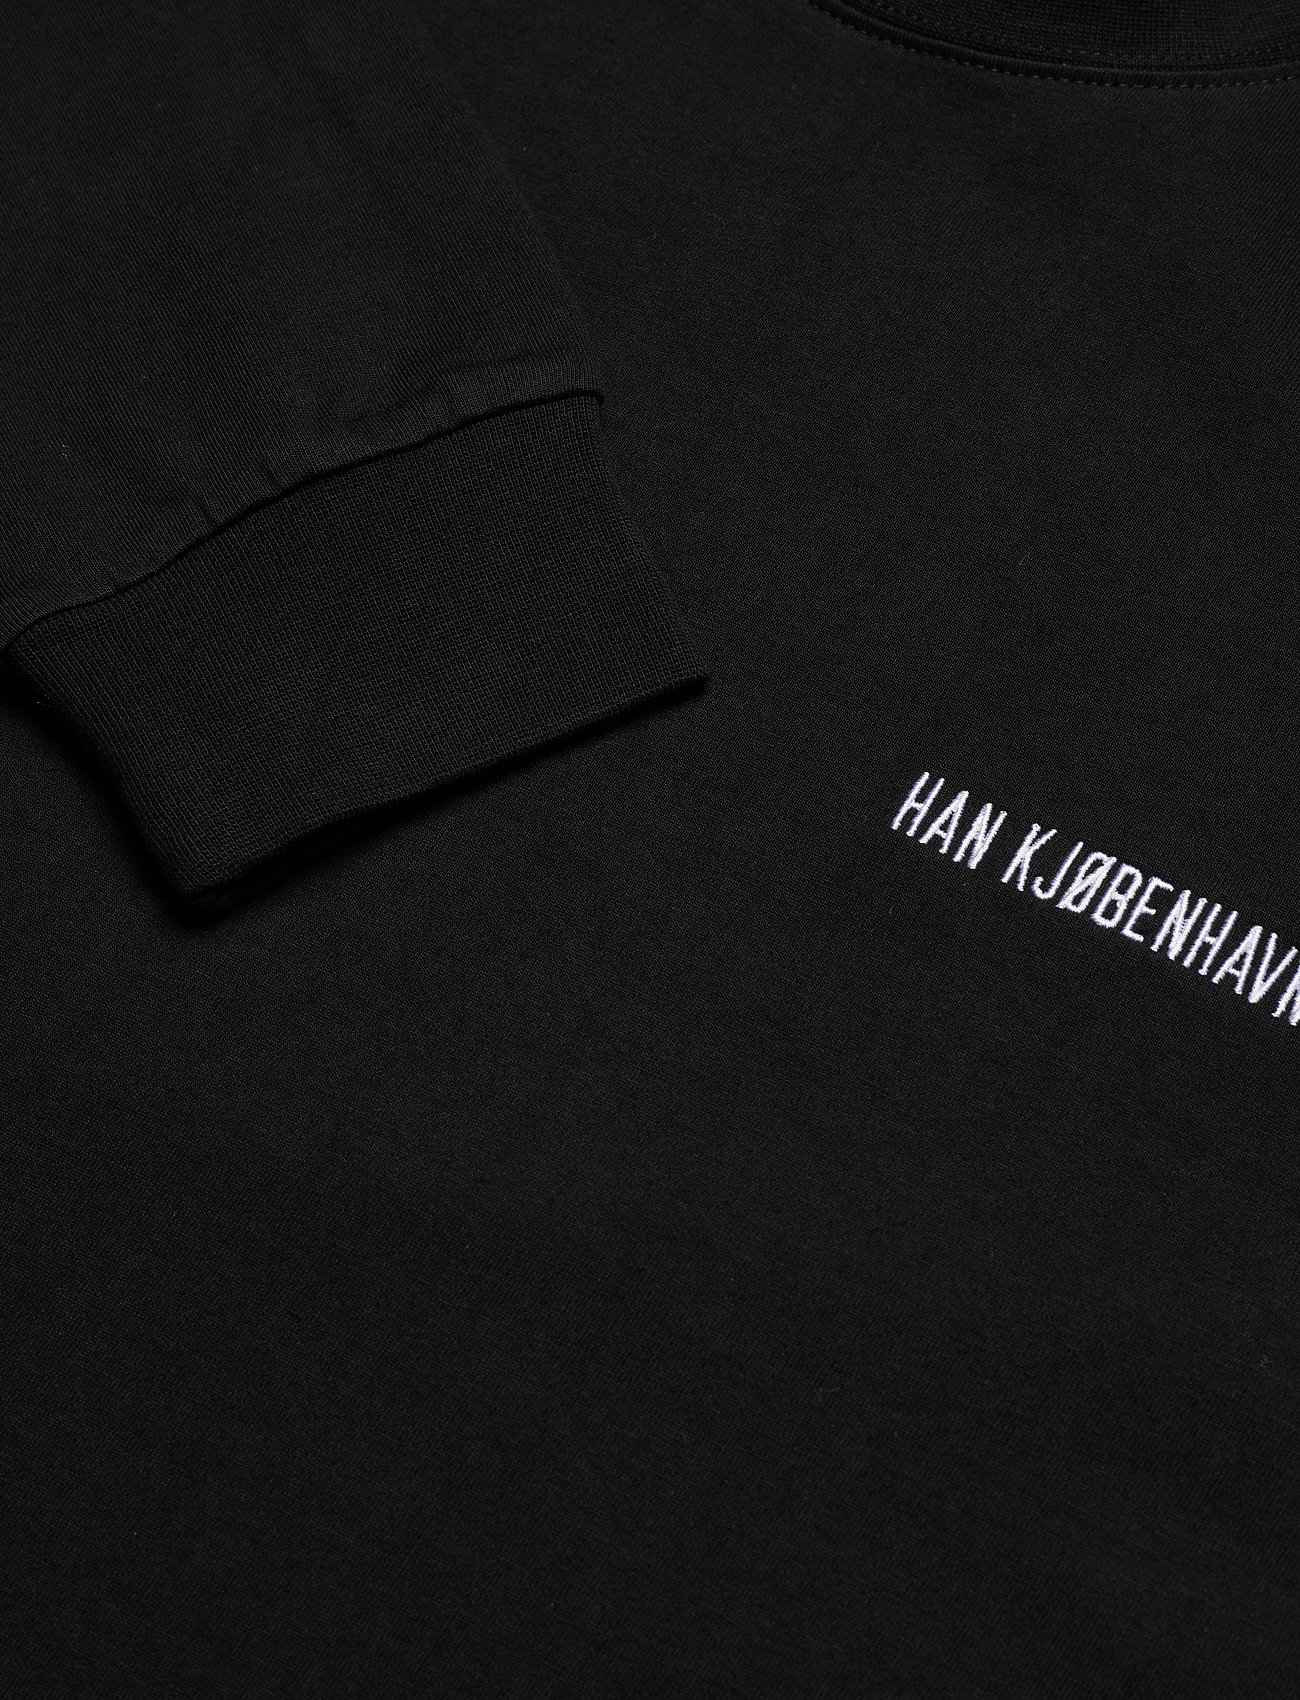 HAN Kjøbenhavn - Casual Tee Long Sleeve - basic skjorter - black logo - 2